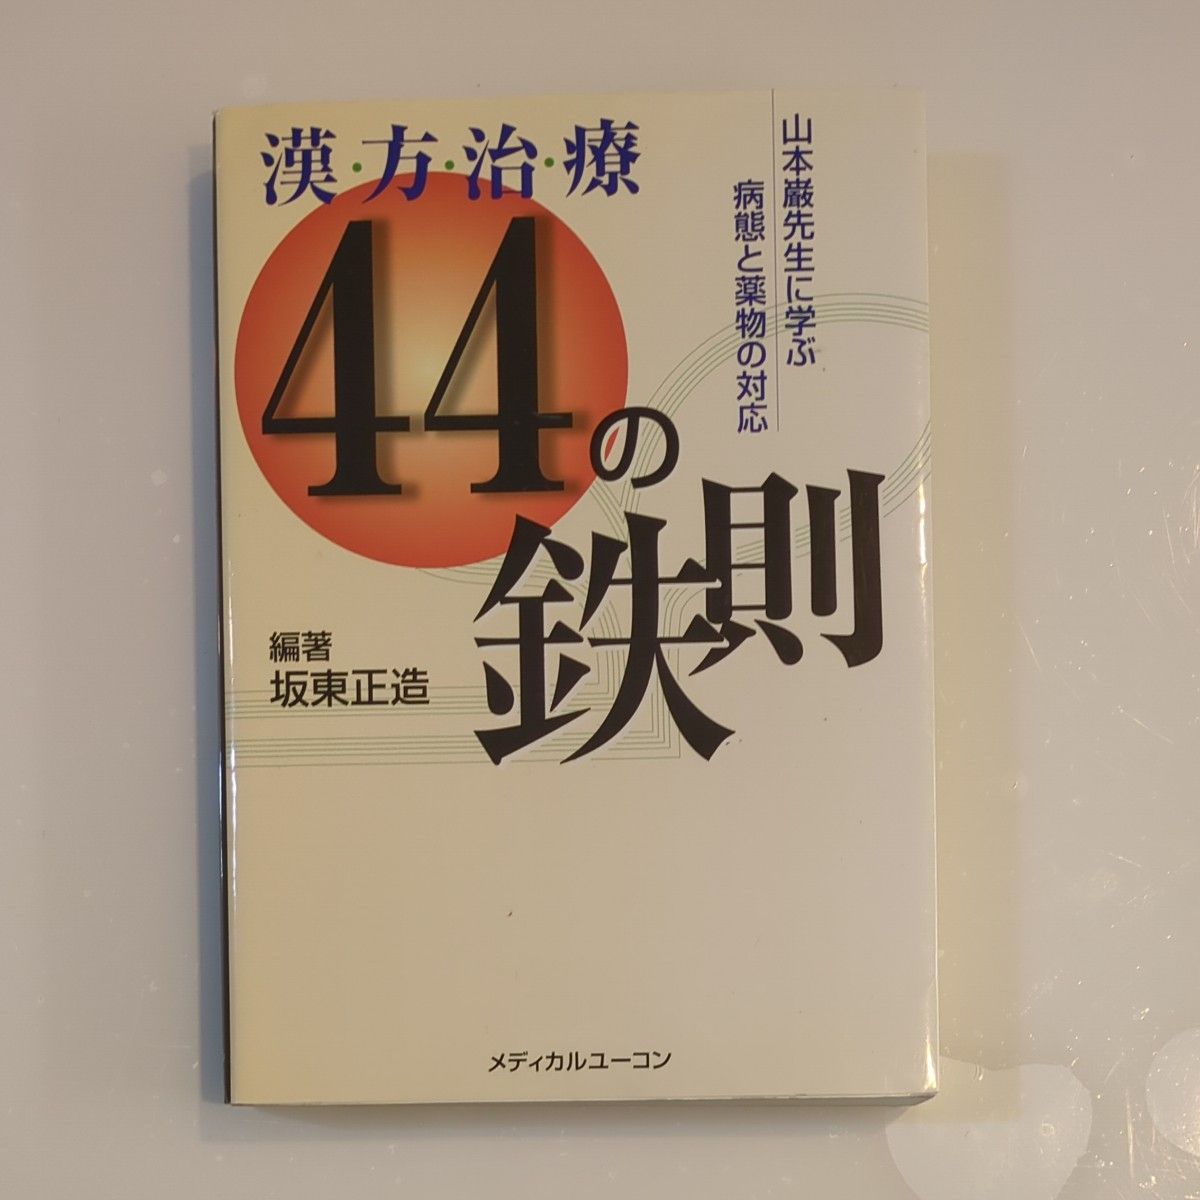 漢方治療44の鉄則 : 山本巌先生に学ぶ病態と薬物の対応